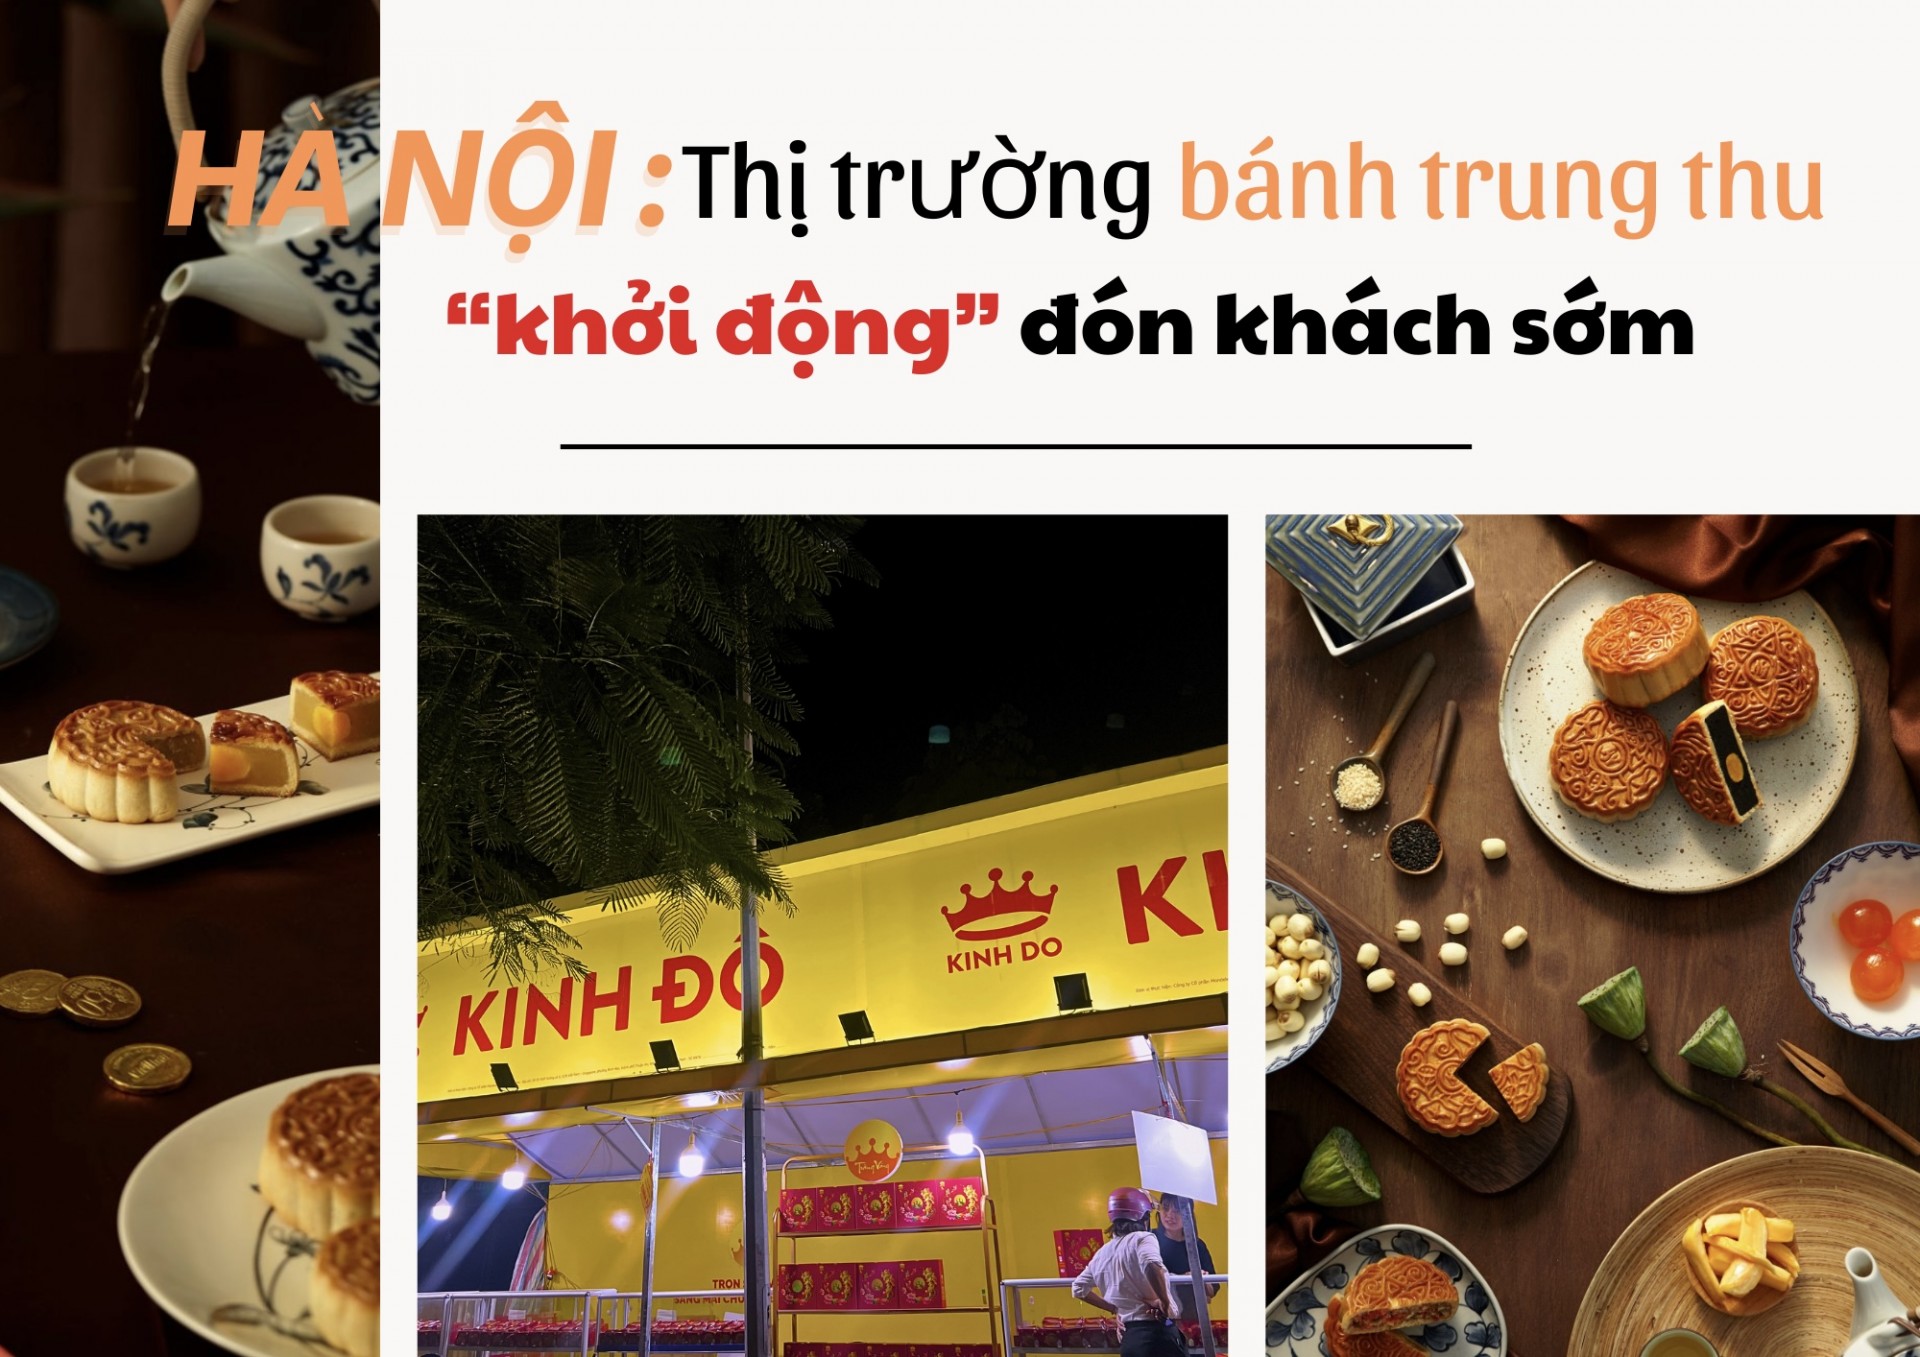 Hà Nội: Thị trường bánh trung thu "rục rịch" đón khách sớm